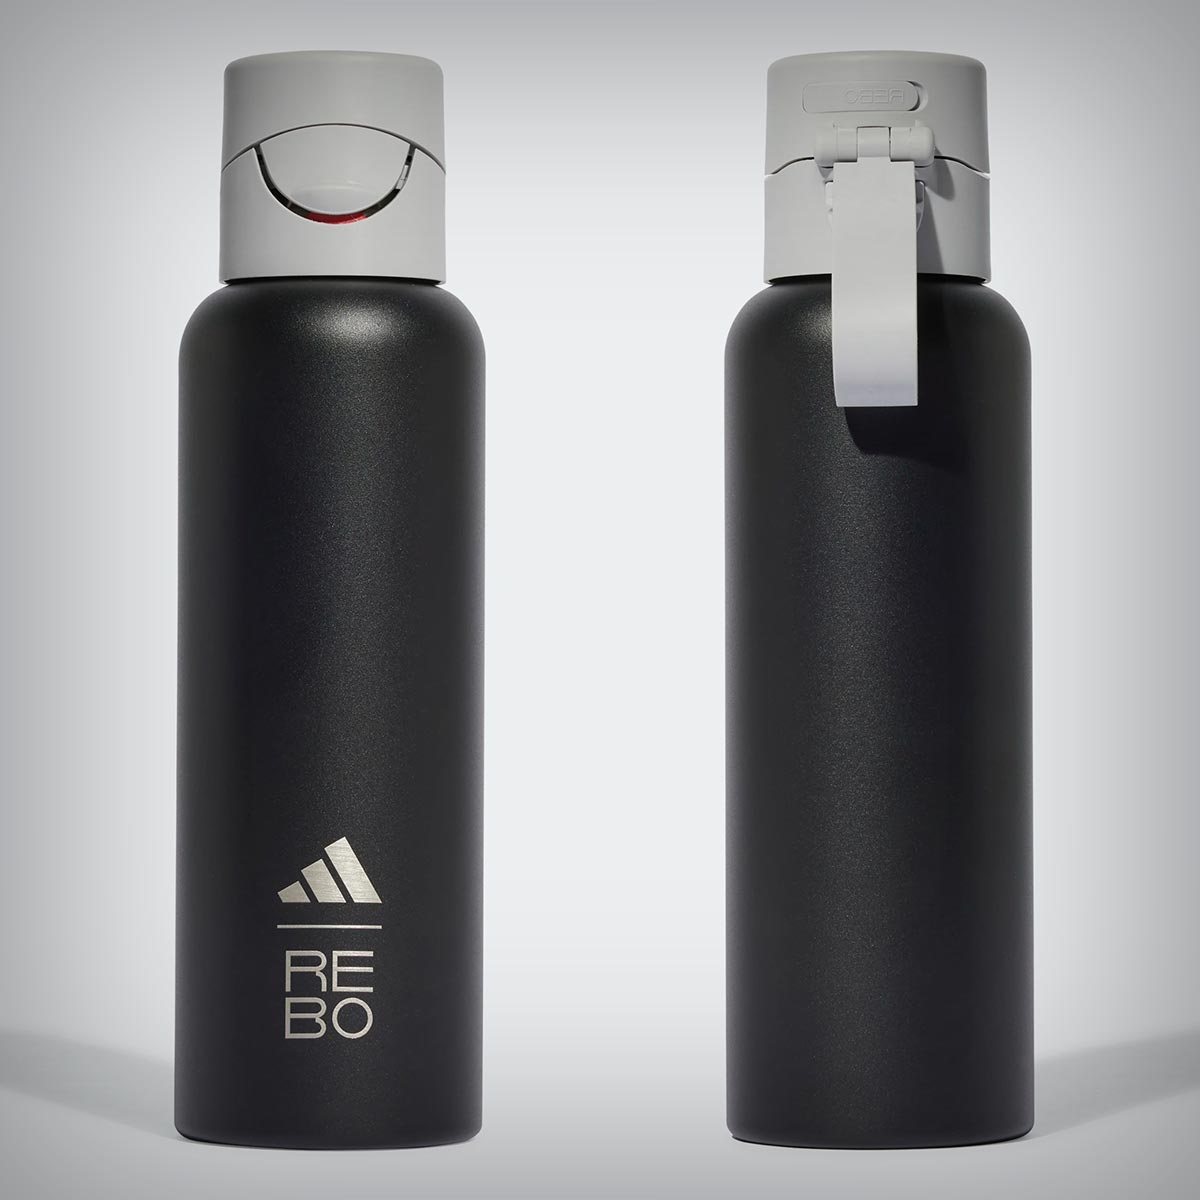 Adidas presenta la Rebo Smart, una botella inteligente que ayuda a conseguir un nivel óptimo de hidratación